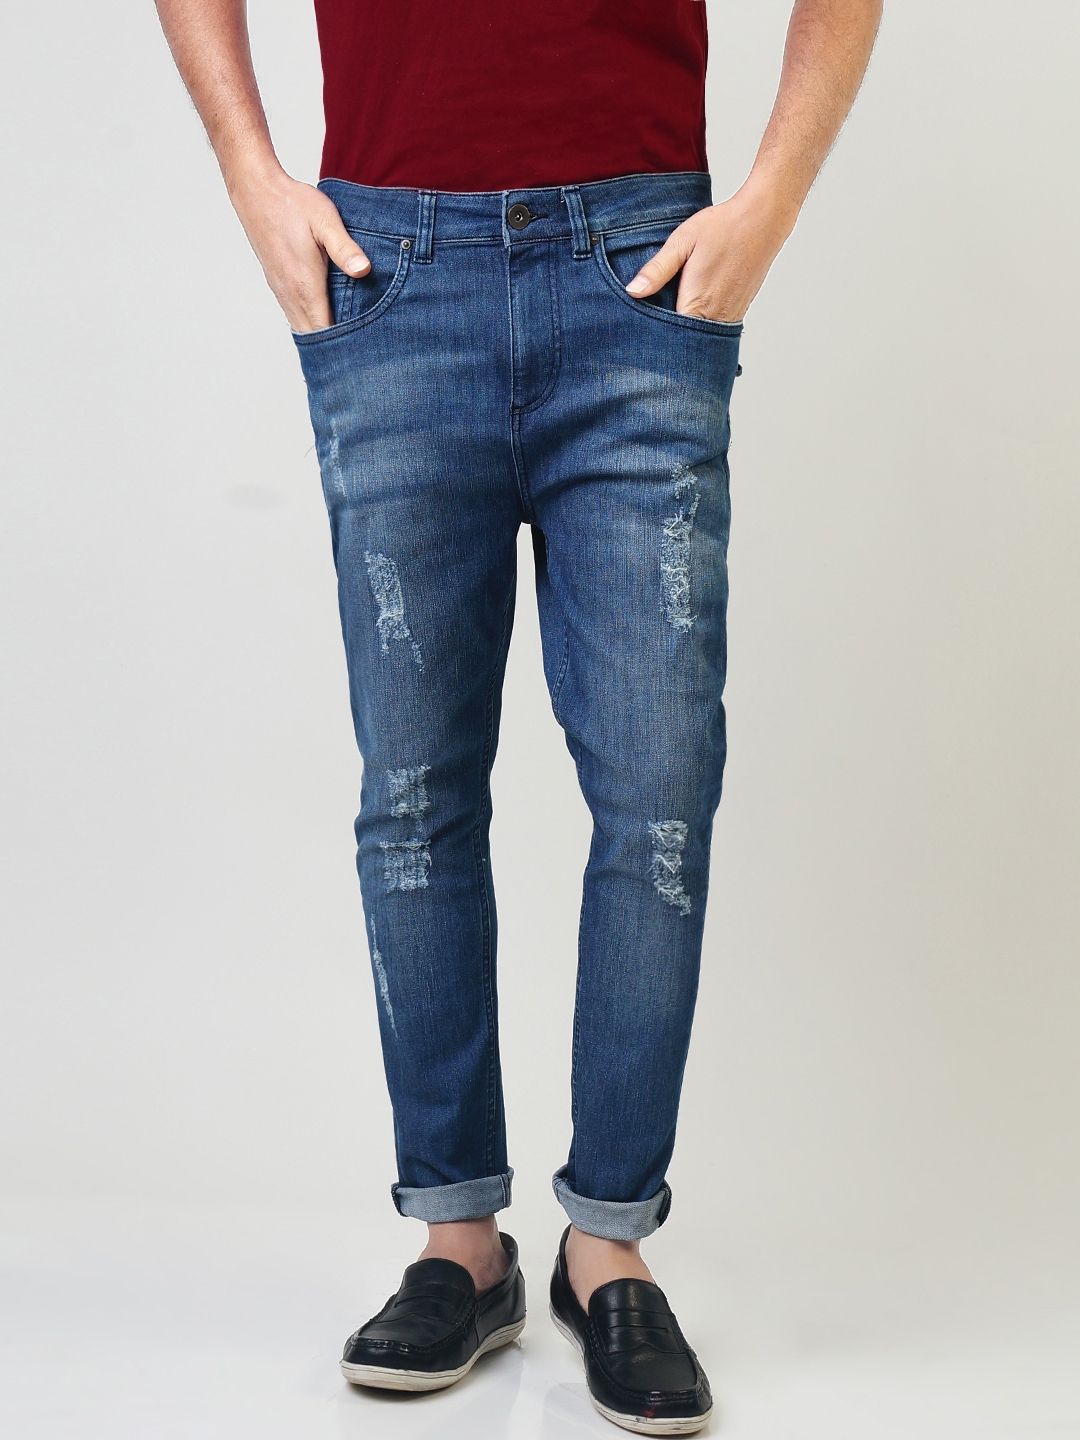 sheltr jeans